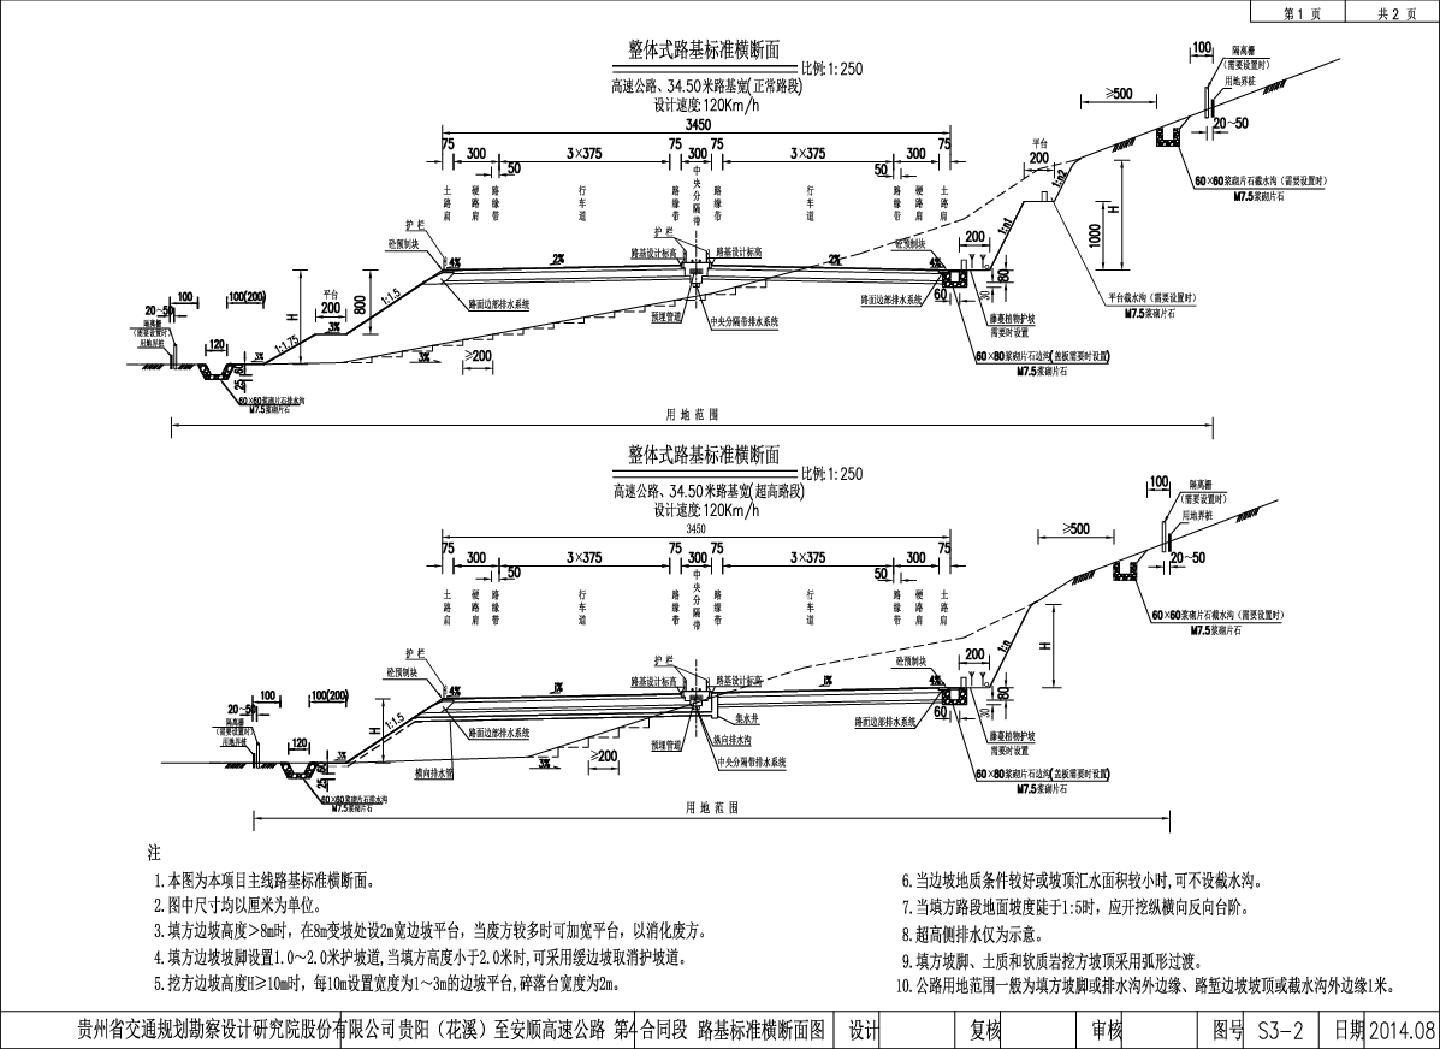 S3-2路基标准横断面图T4标